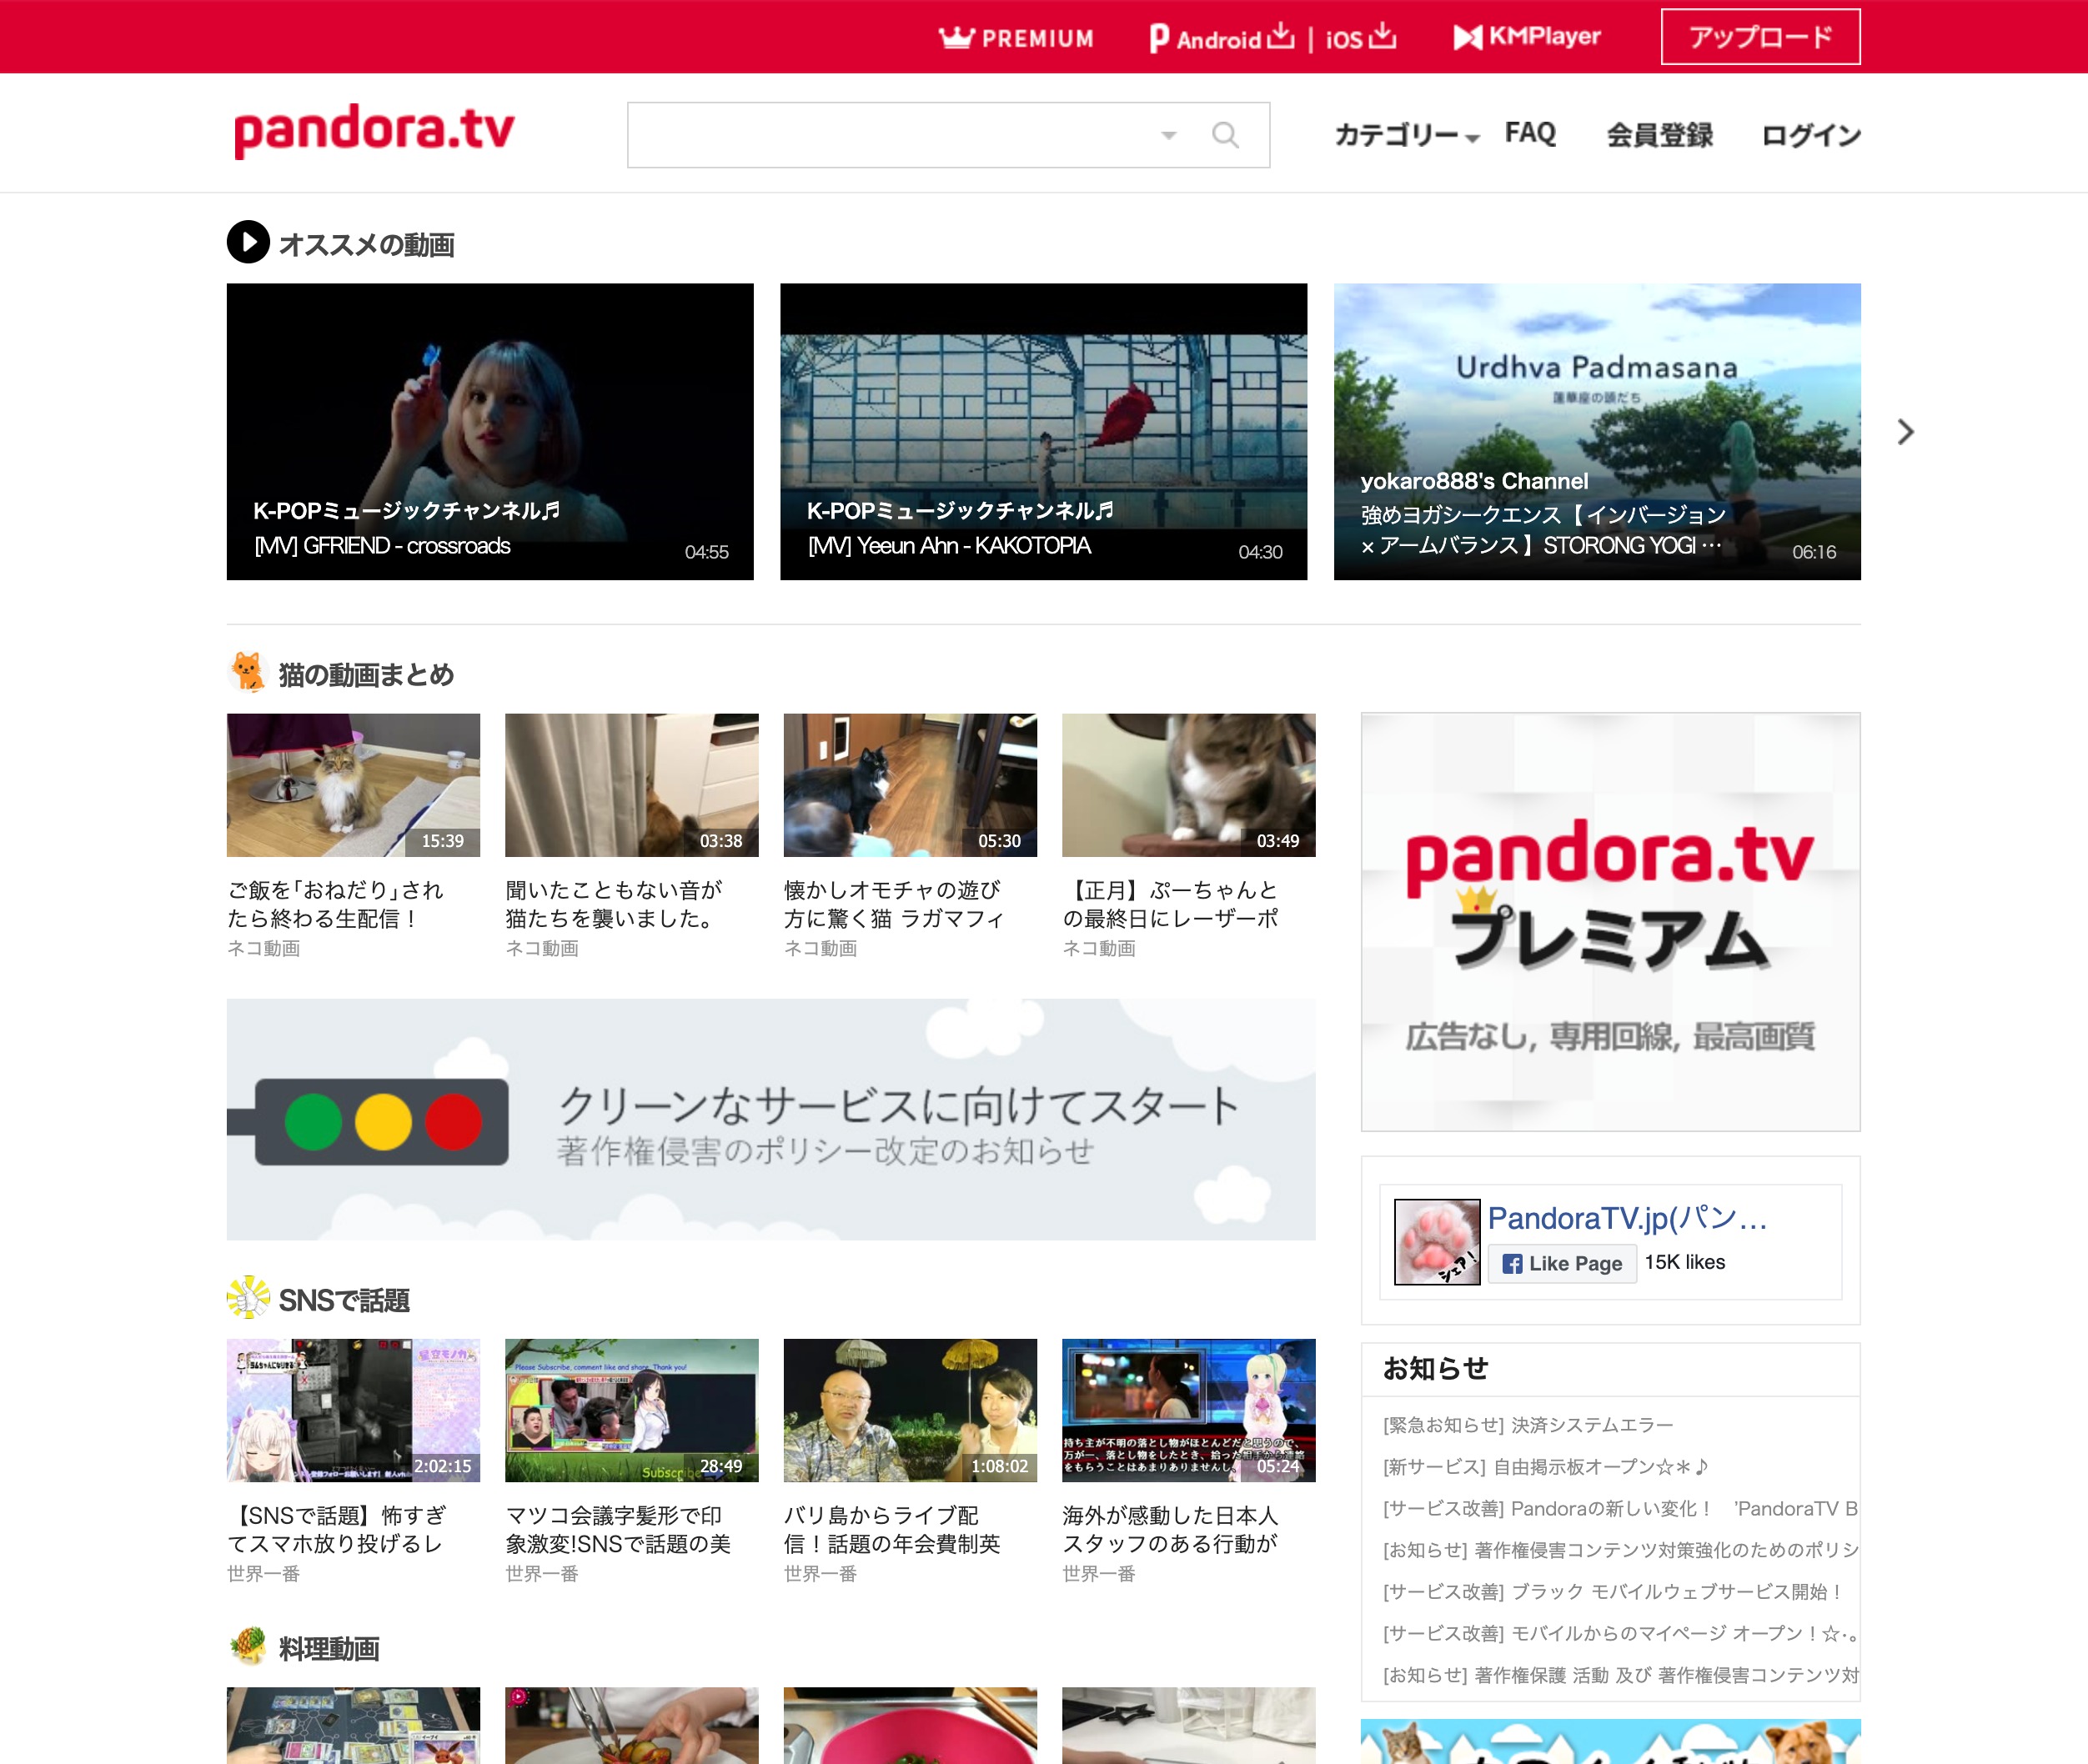 PandoraTV